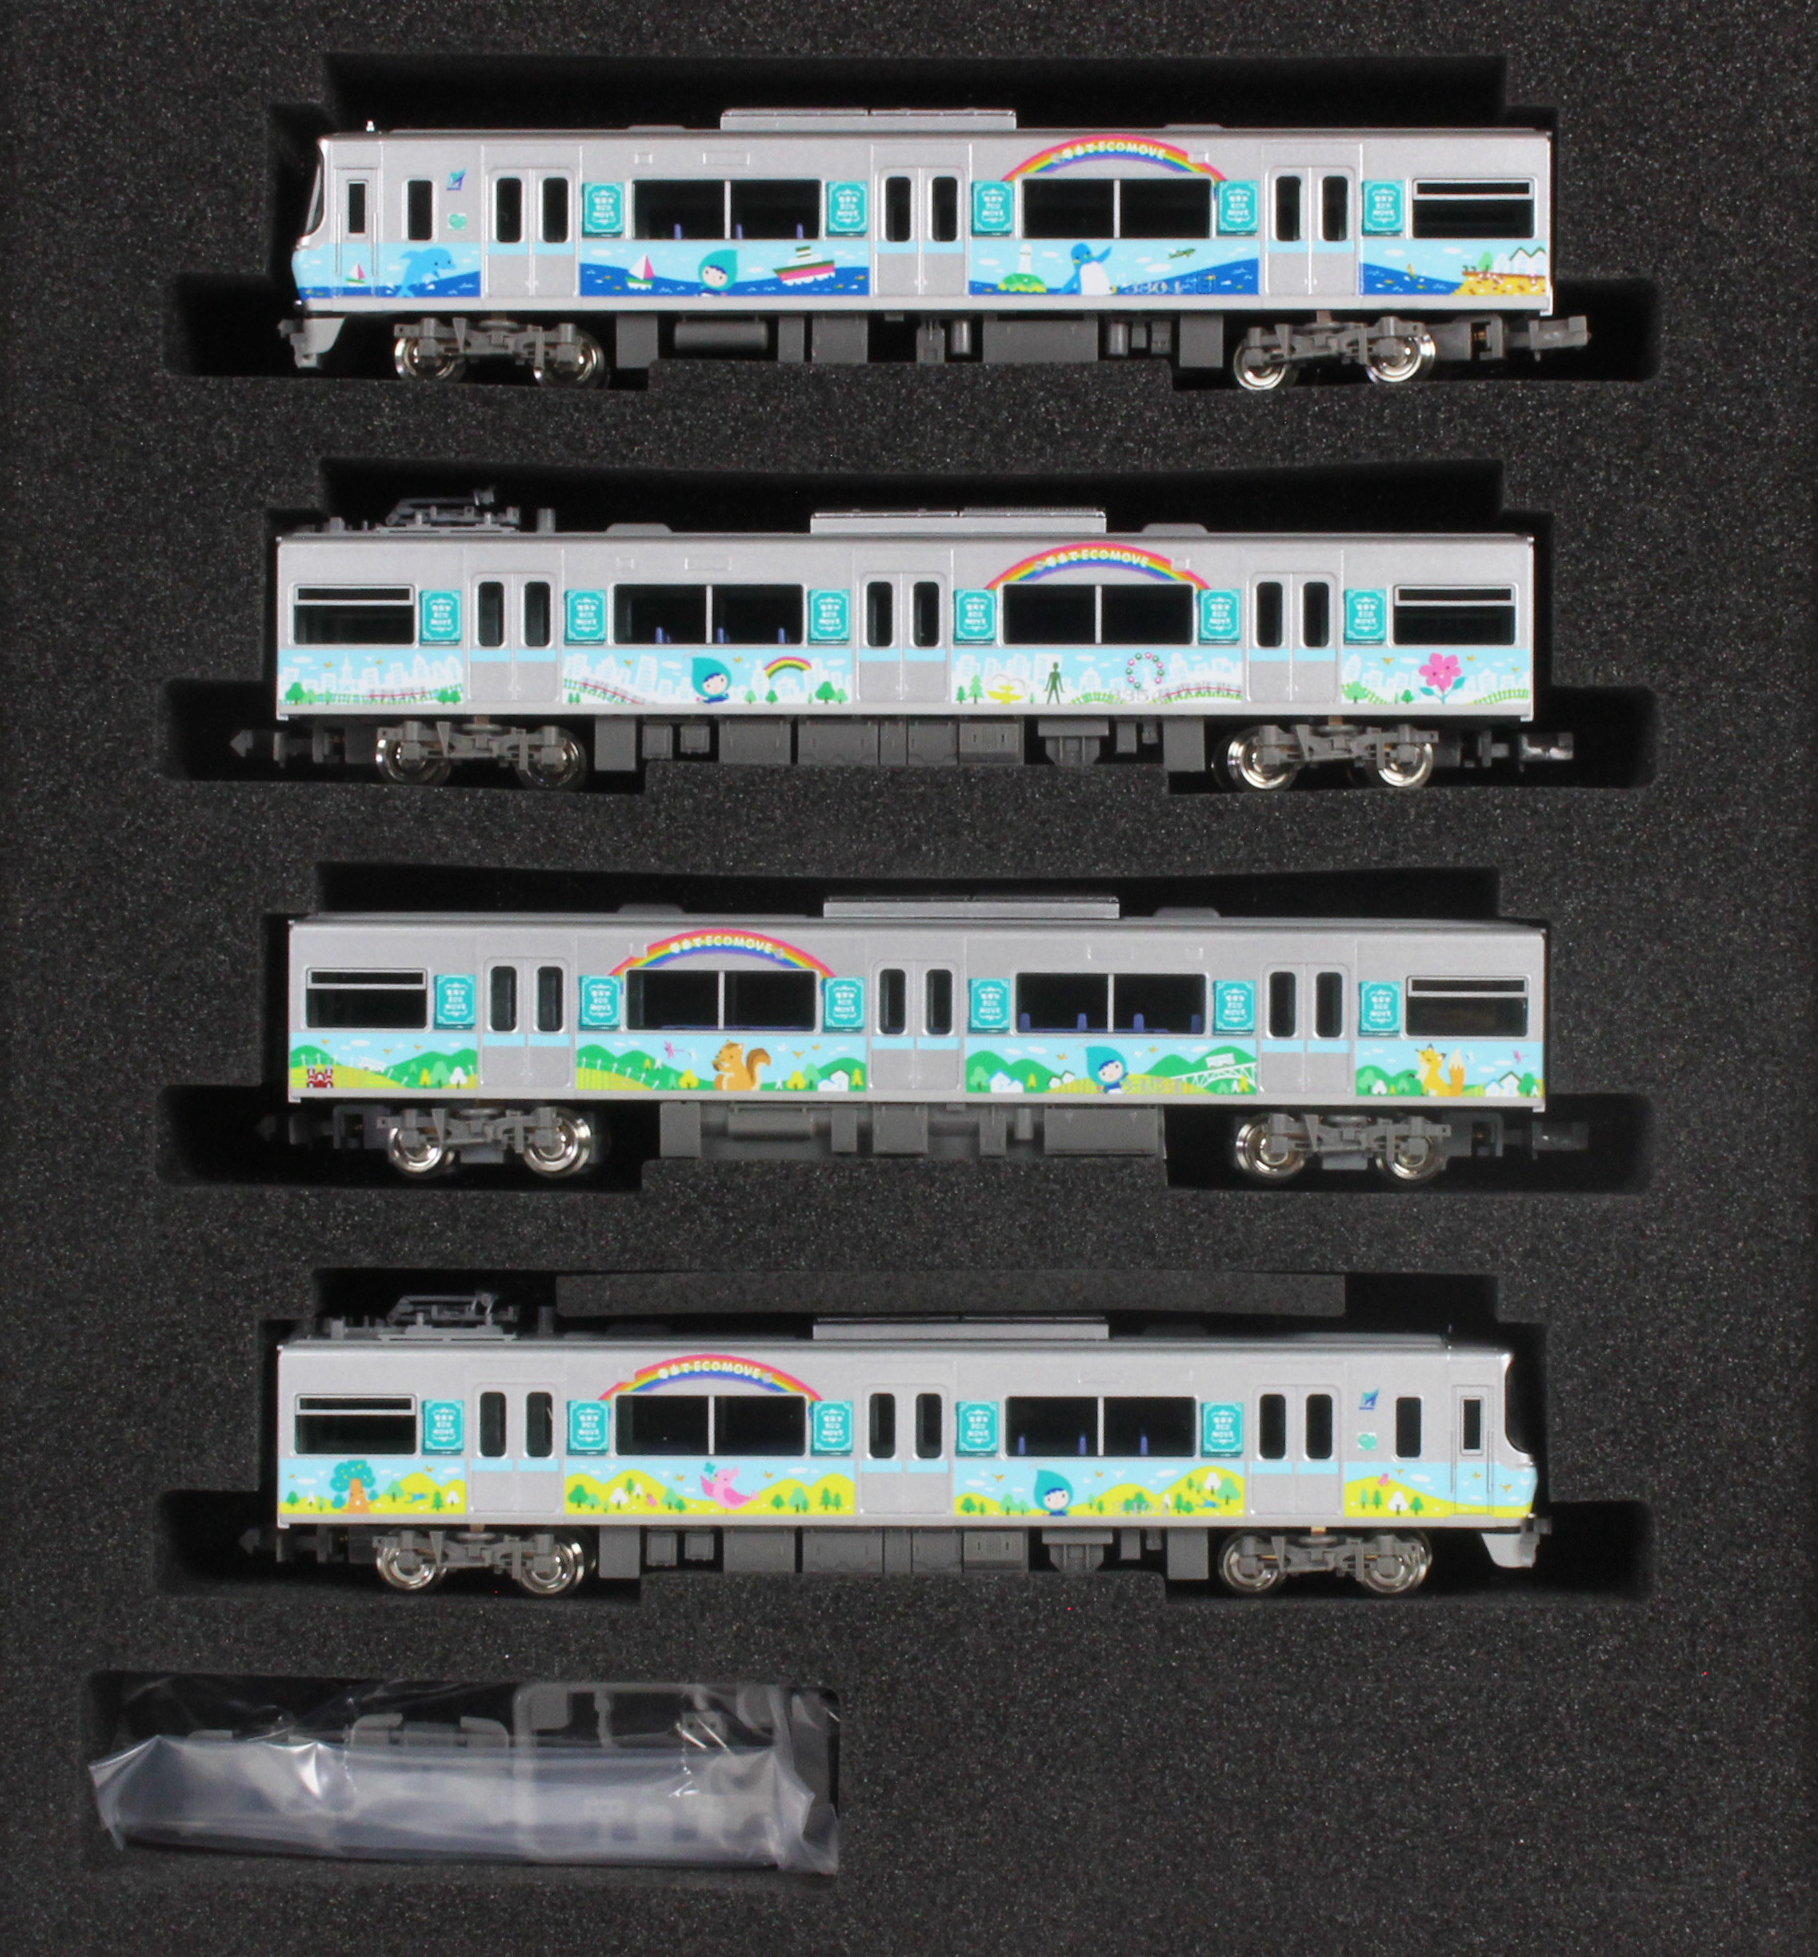 Nゲージ 名鉄3300系 エコムーブラッピングトレイン - 鉄道模型